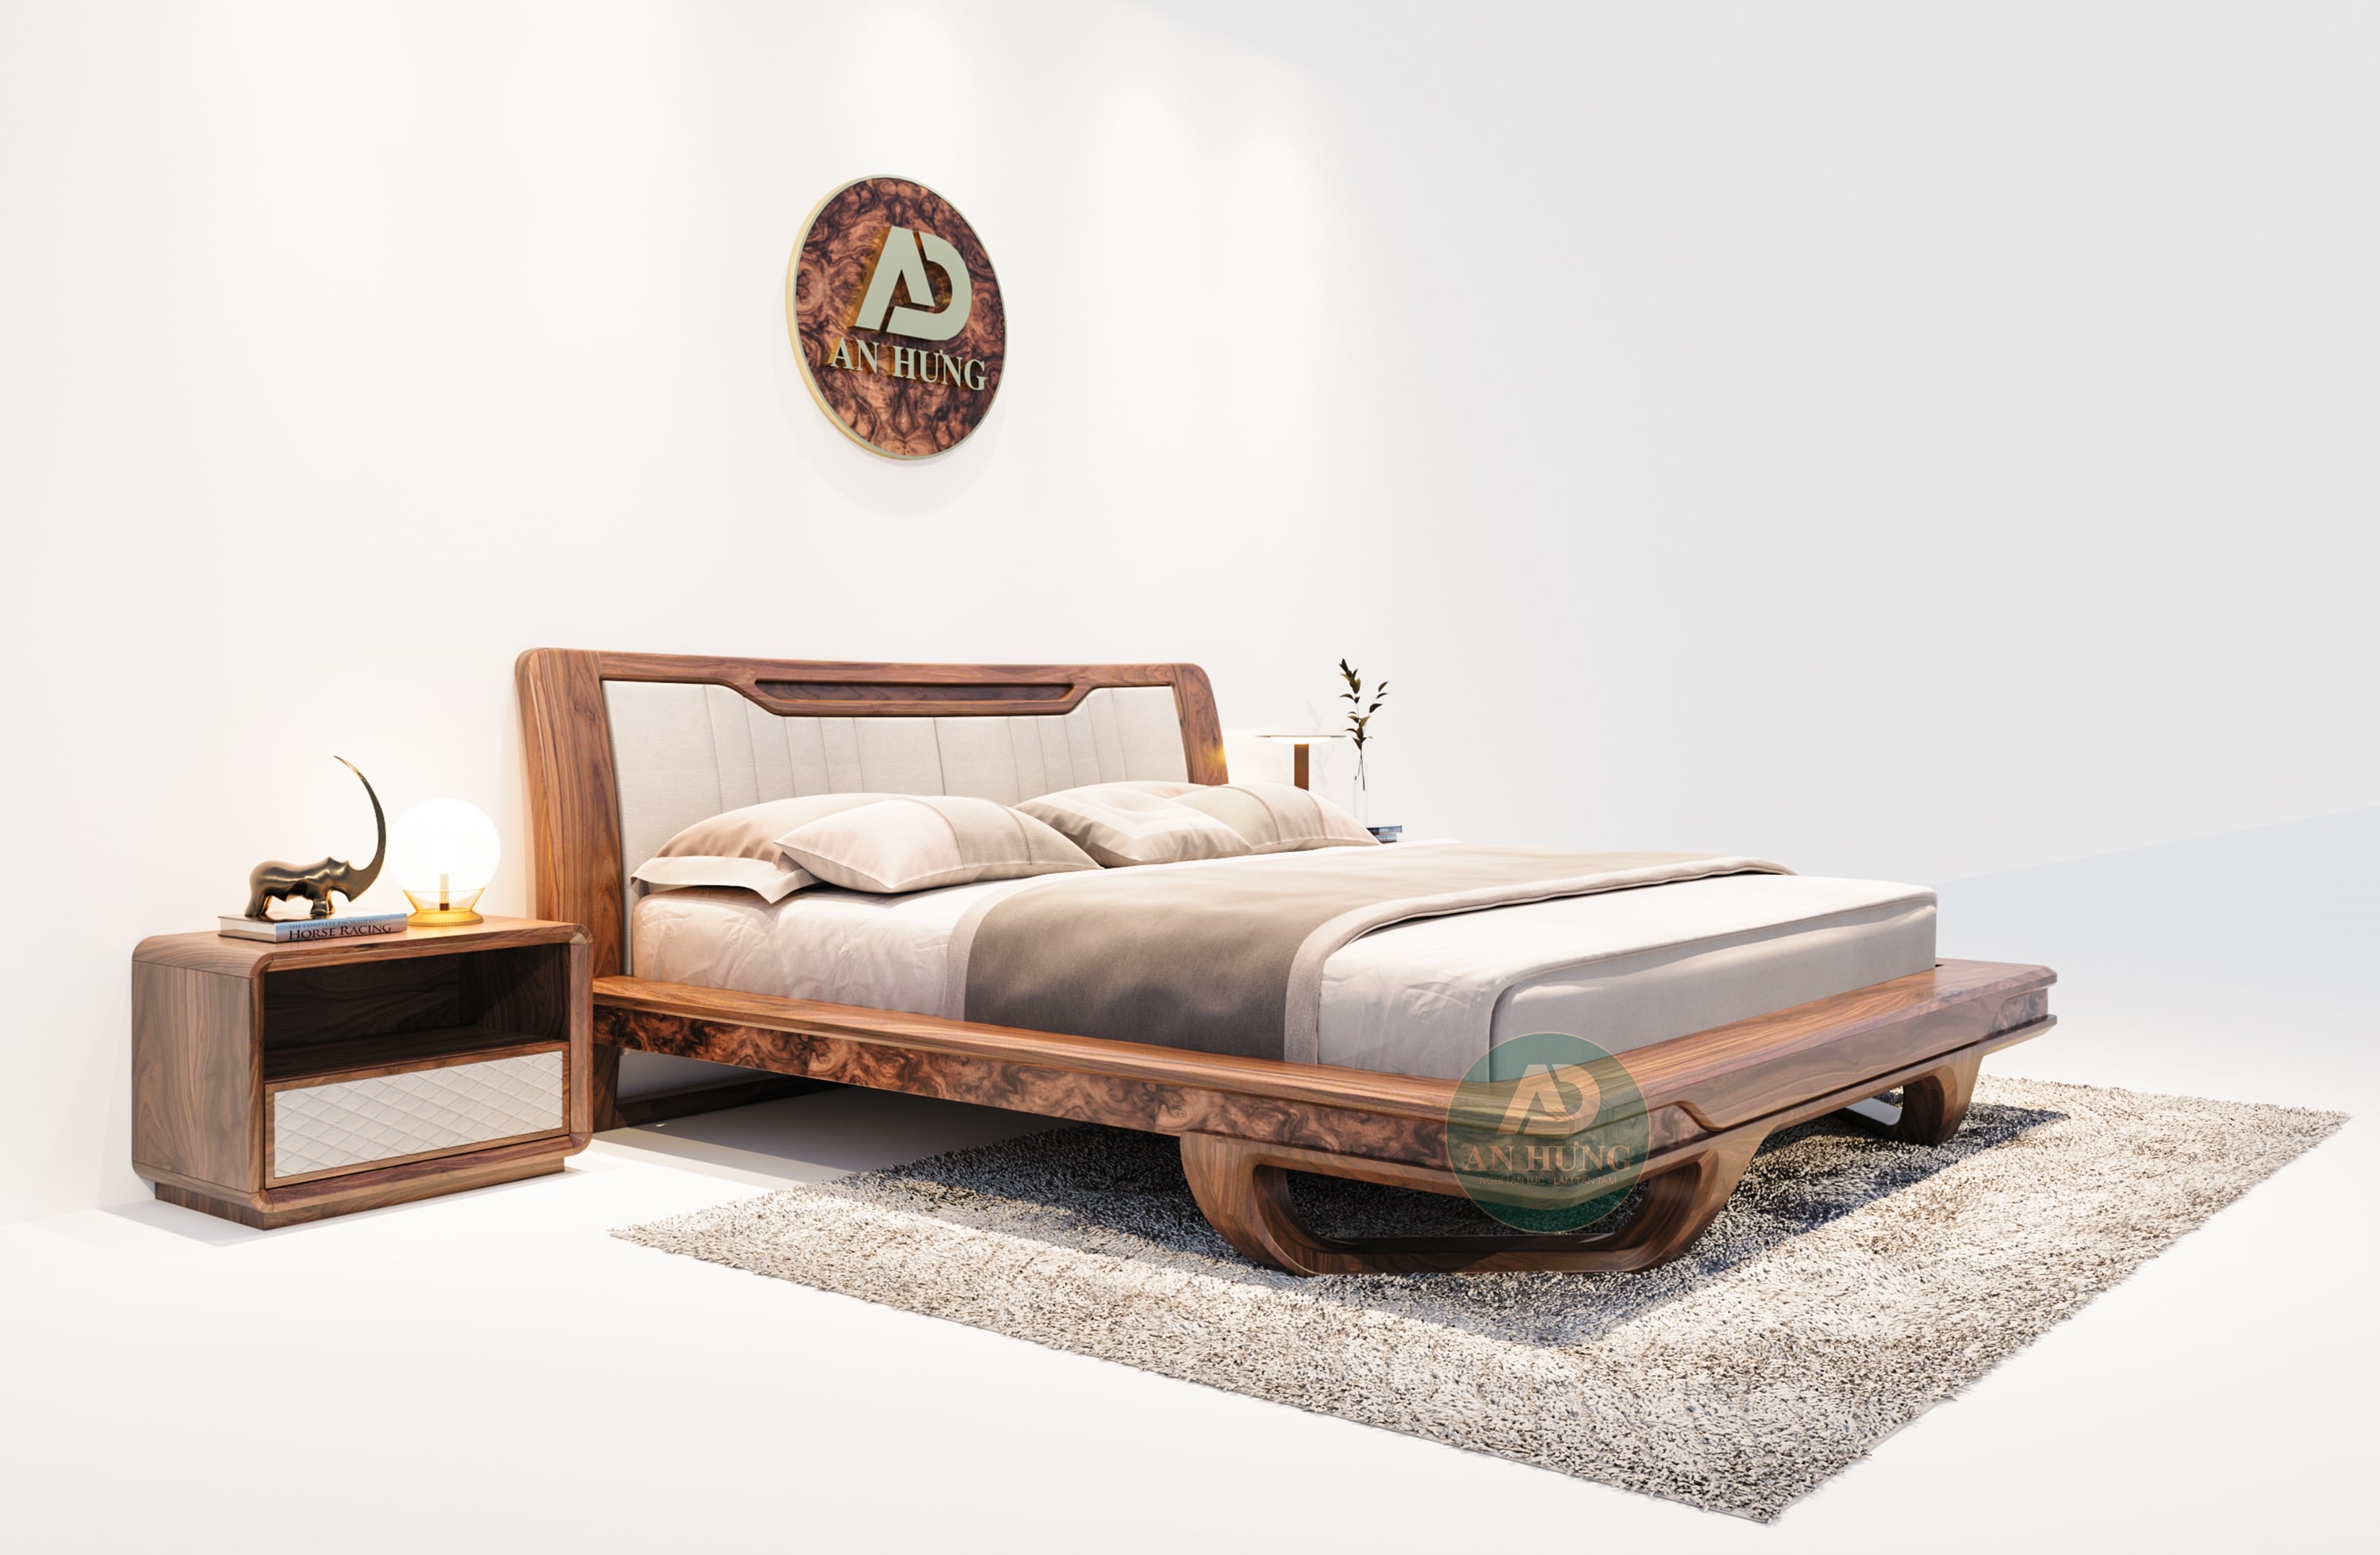 Thiết kế giường gỗ óc chó thời thượng